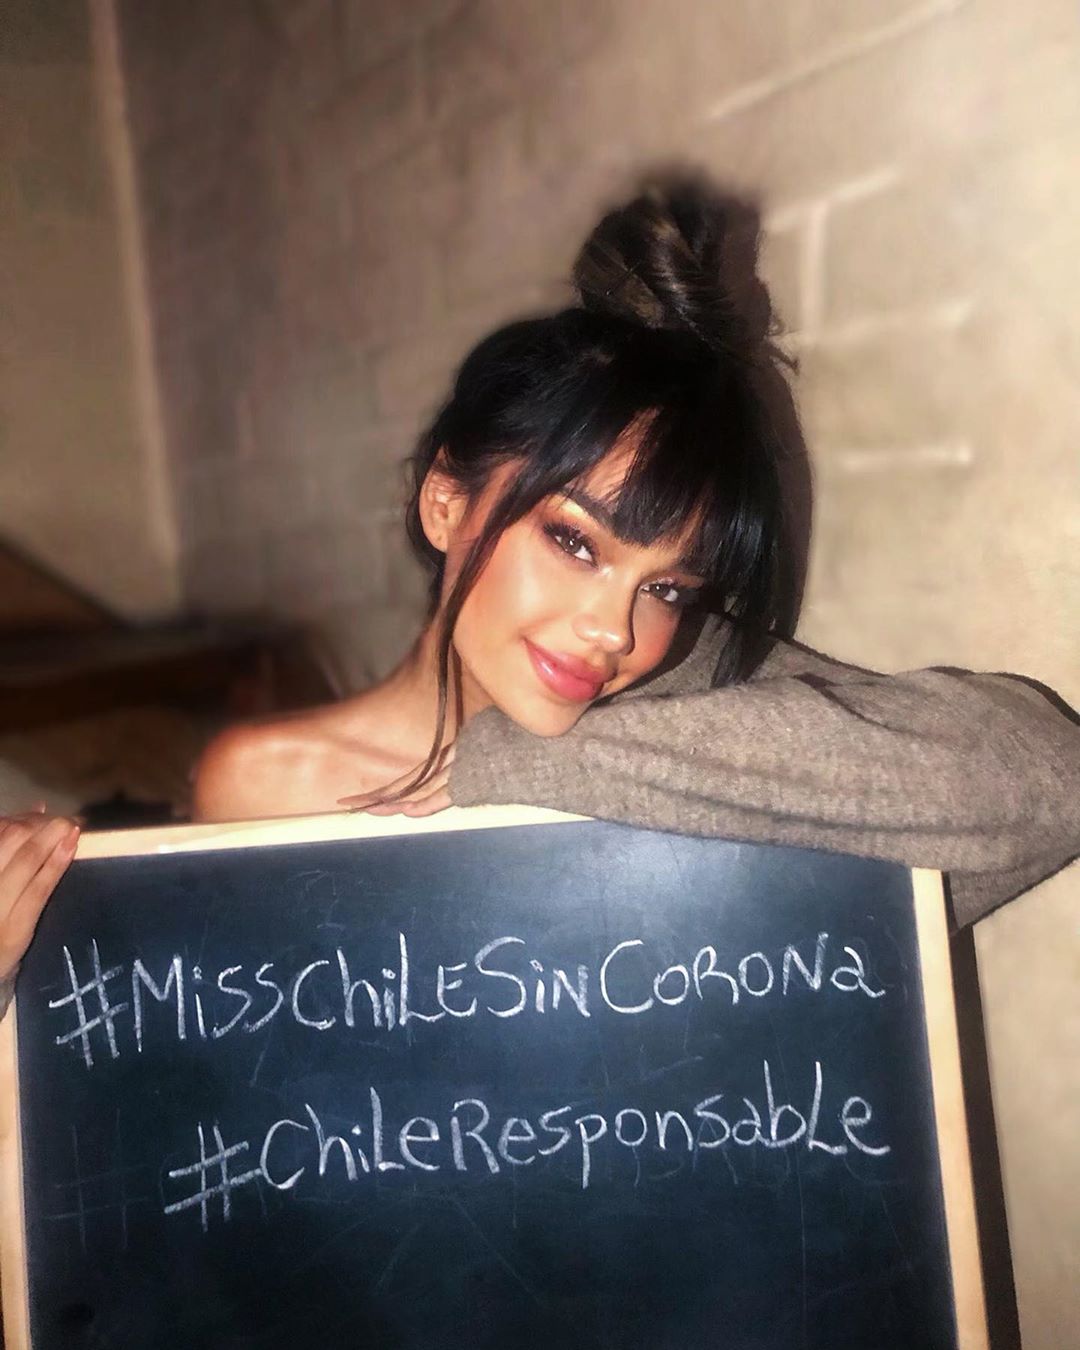  "Miss Chile sin Corona": Modelos se unen en campaña solidaria por Covid-19  IoraxF